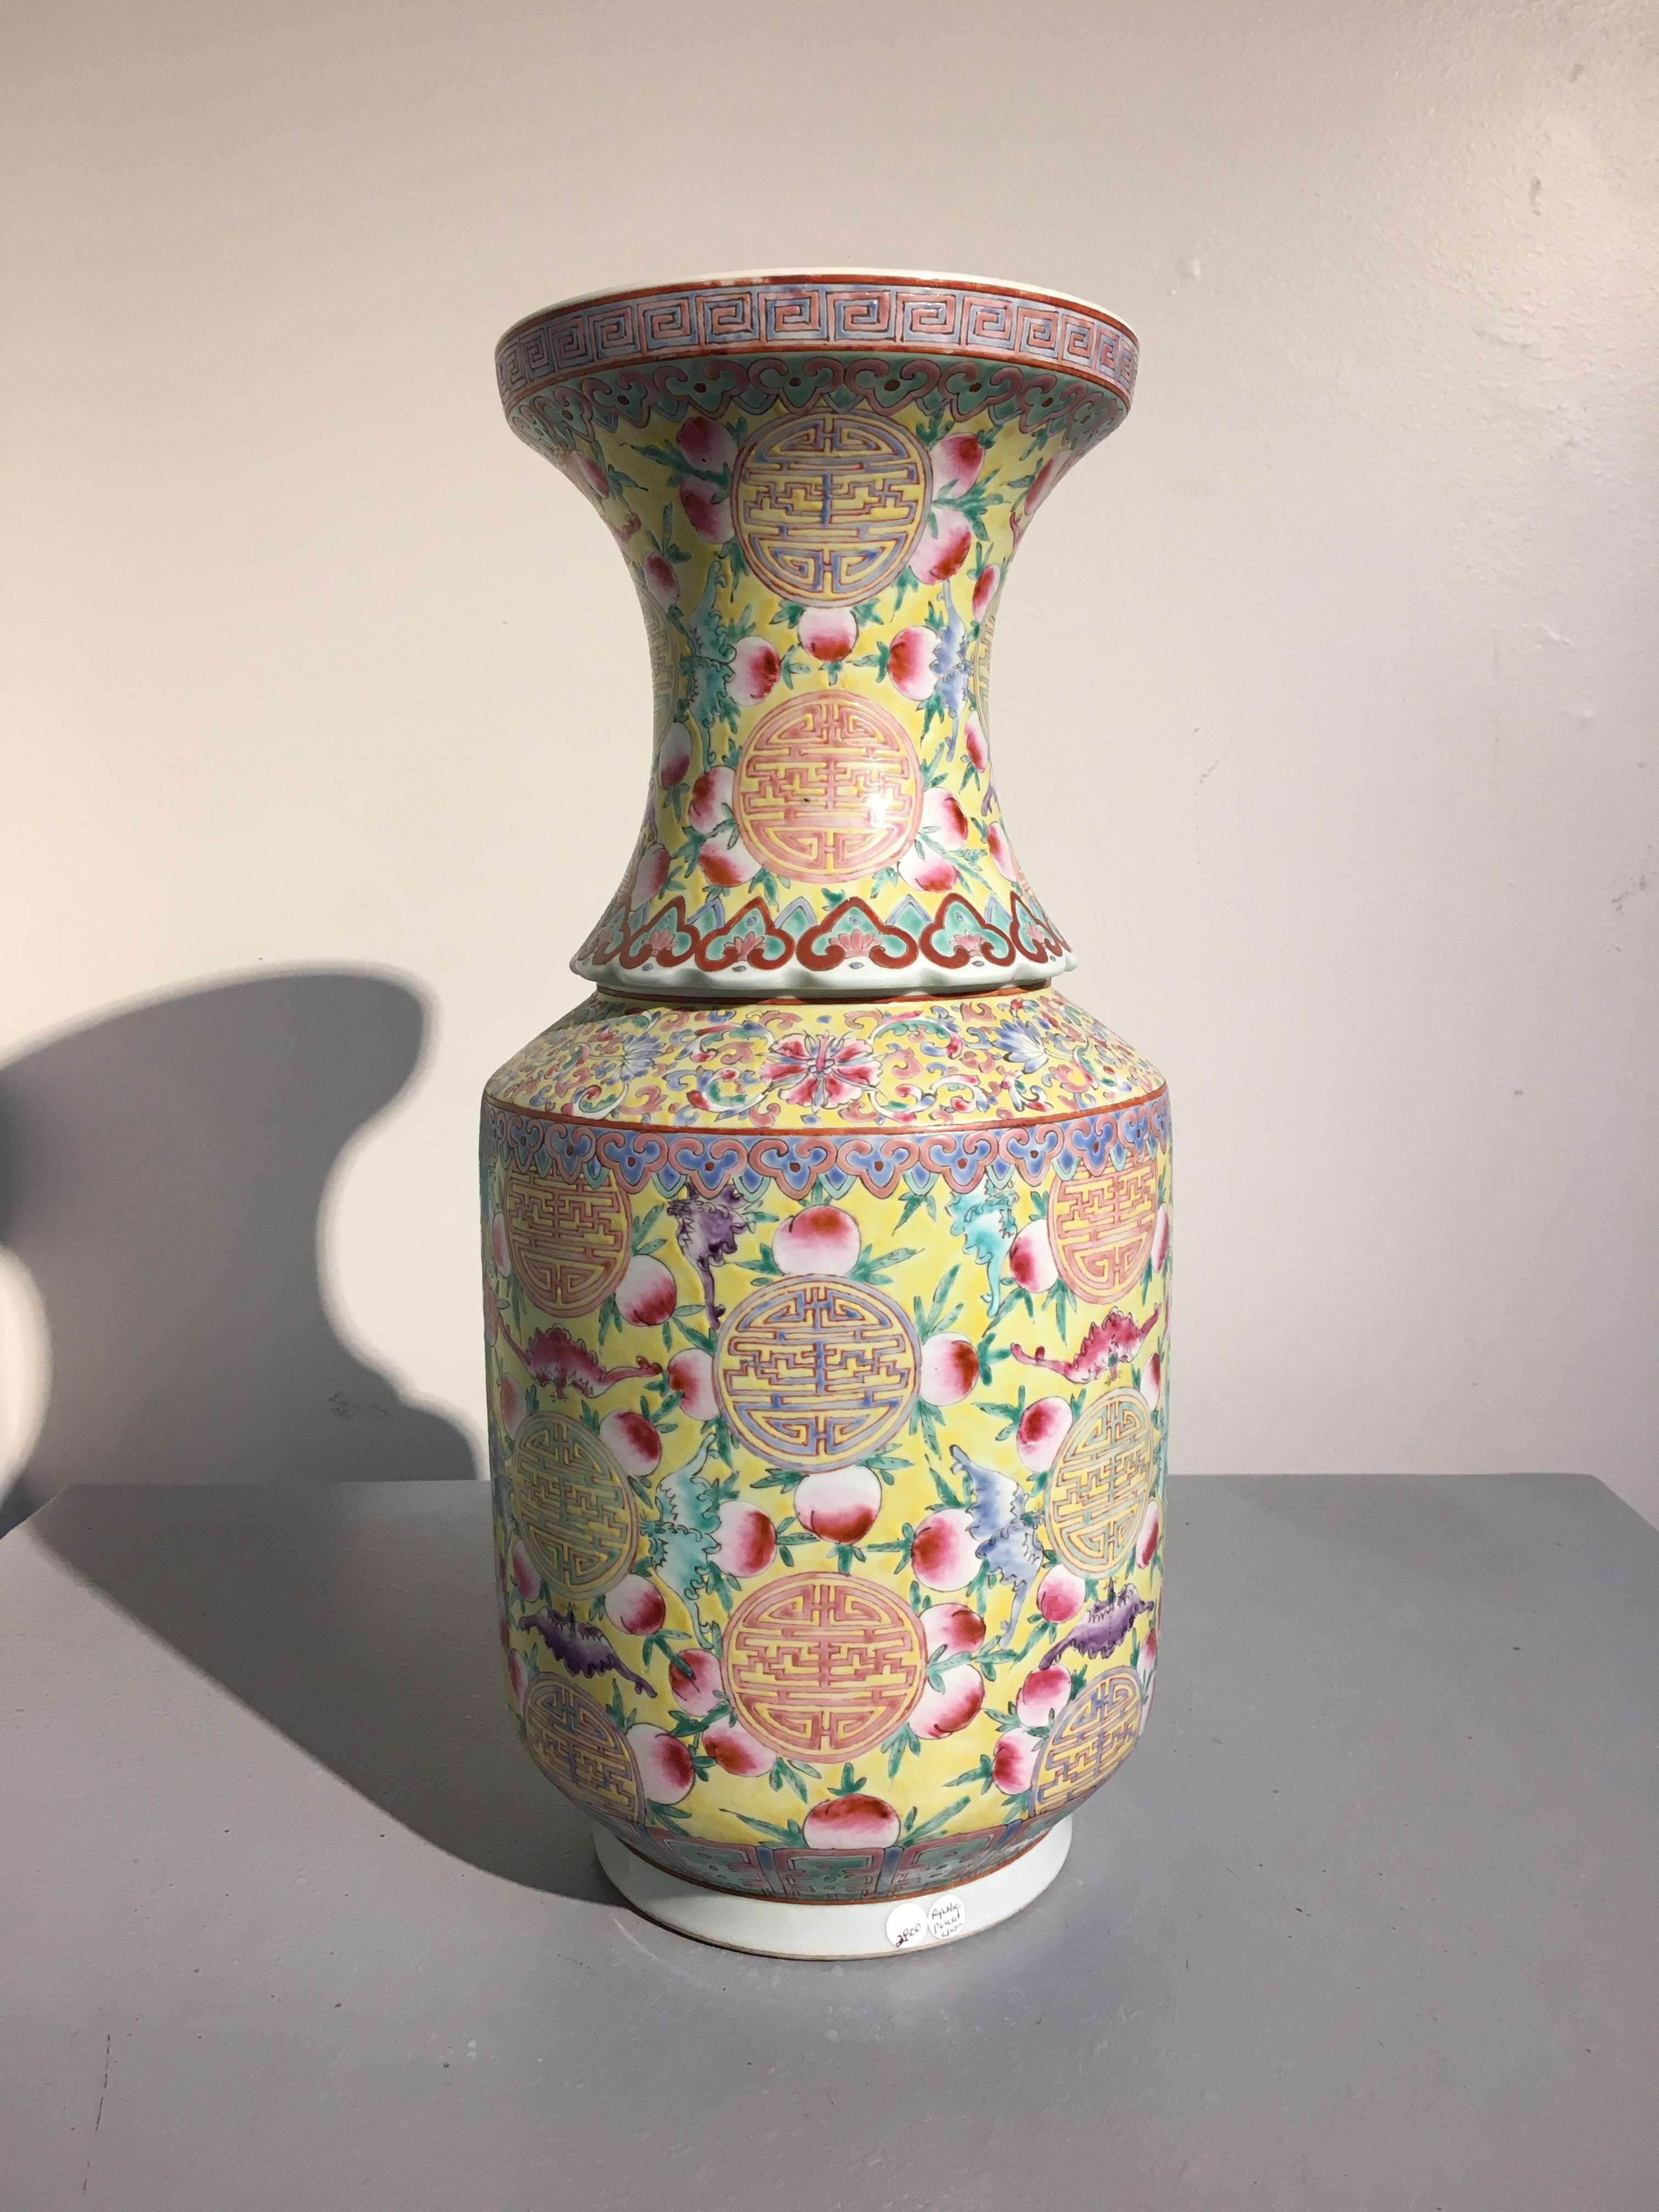 Große chinesische Porzellanvase mit sechs Zeichen der Marke Da Qing Guangxu Nian Zhi, späte Republik, um 1940. 
Die ungewöhnliche Form der hohen Vase besteht aus zwei Teilen, wobei der hohe zylindrische Körper auf einem hohen, schmalen Fuß ruht.